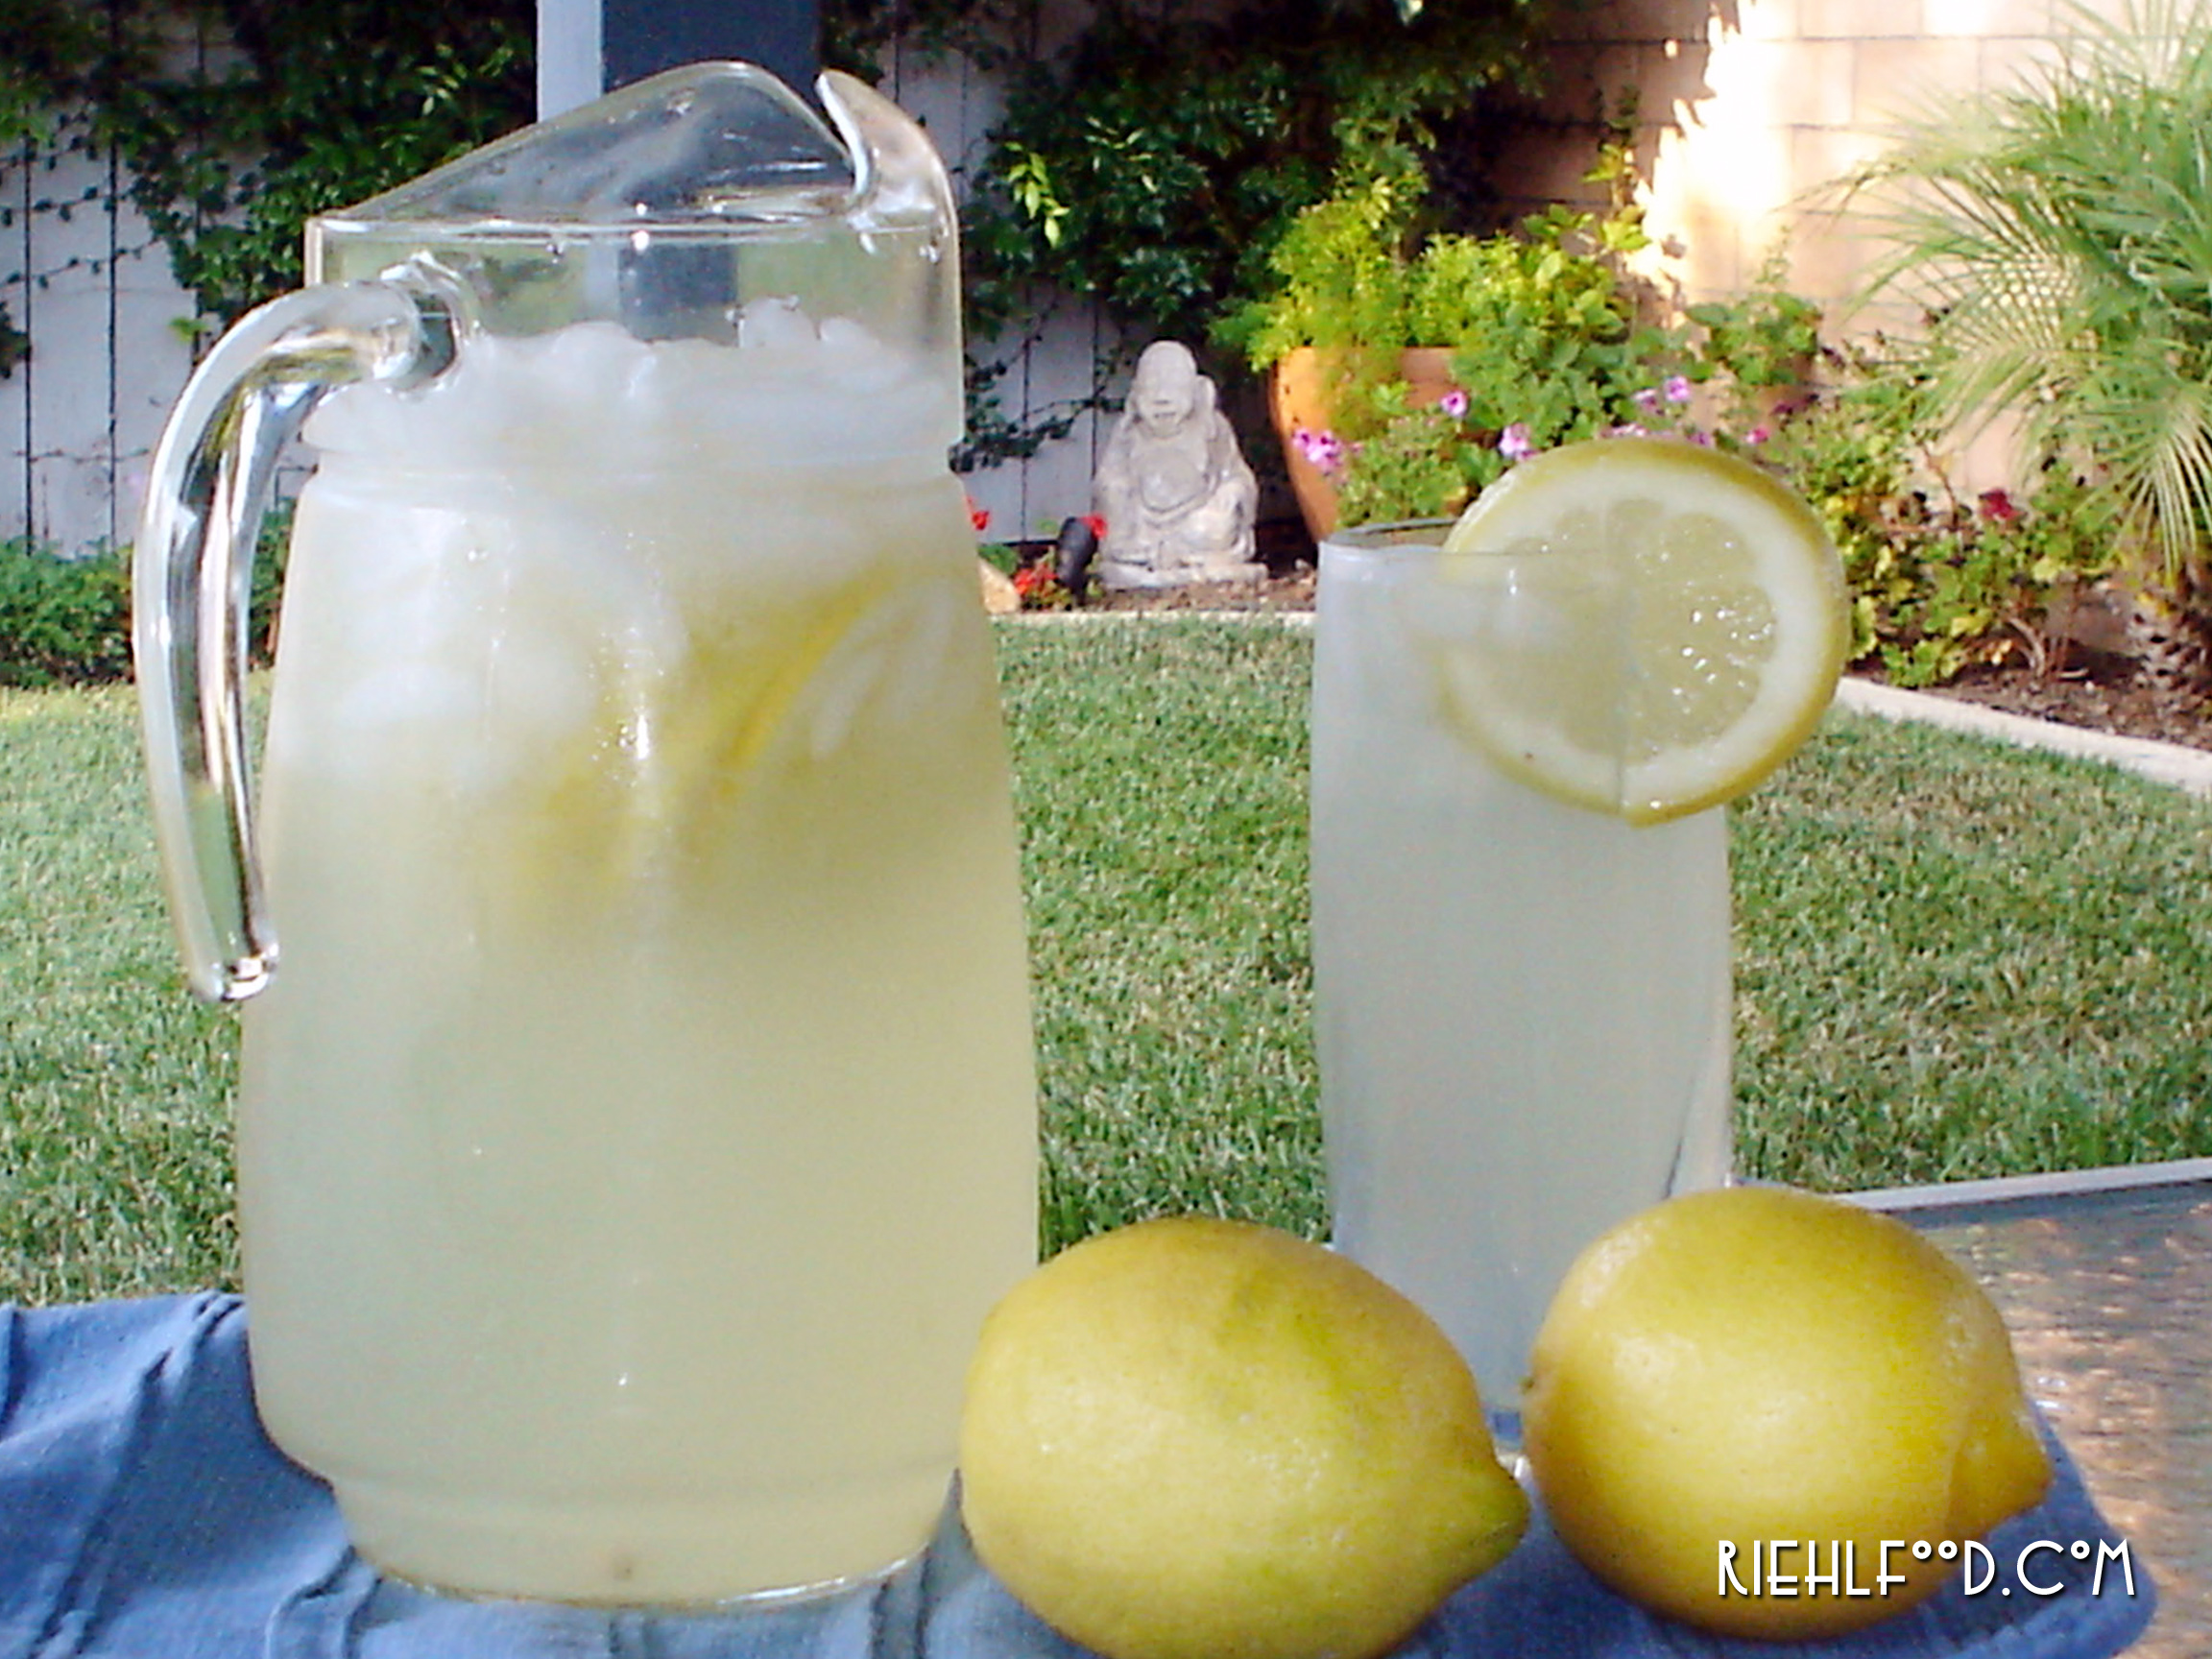 Perfect Lemonade